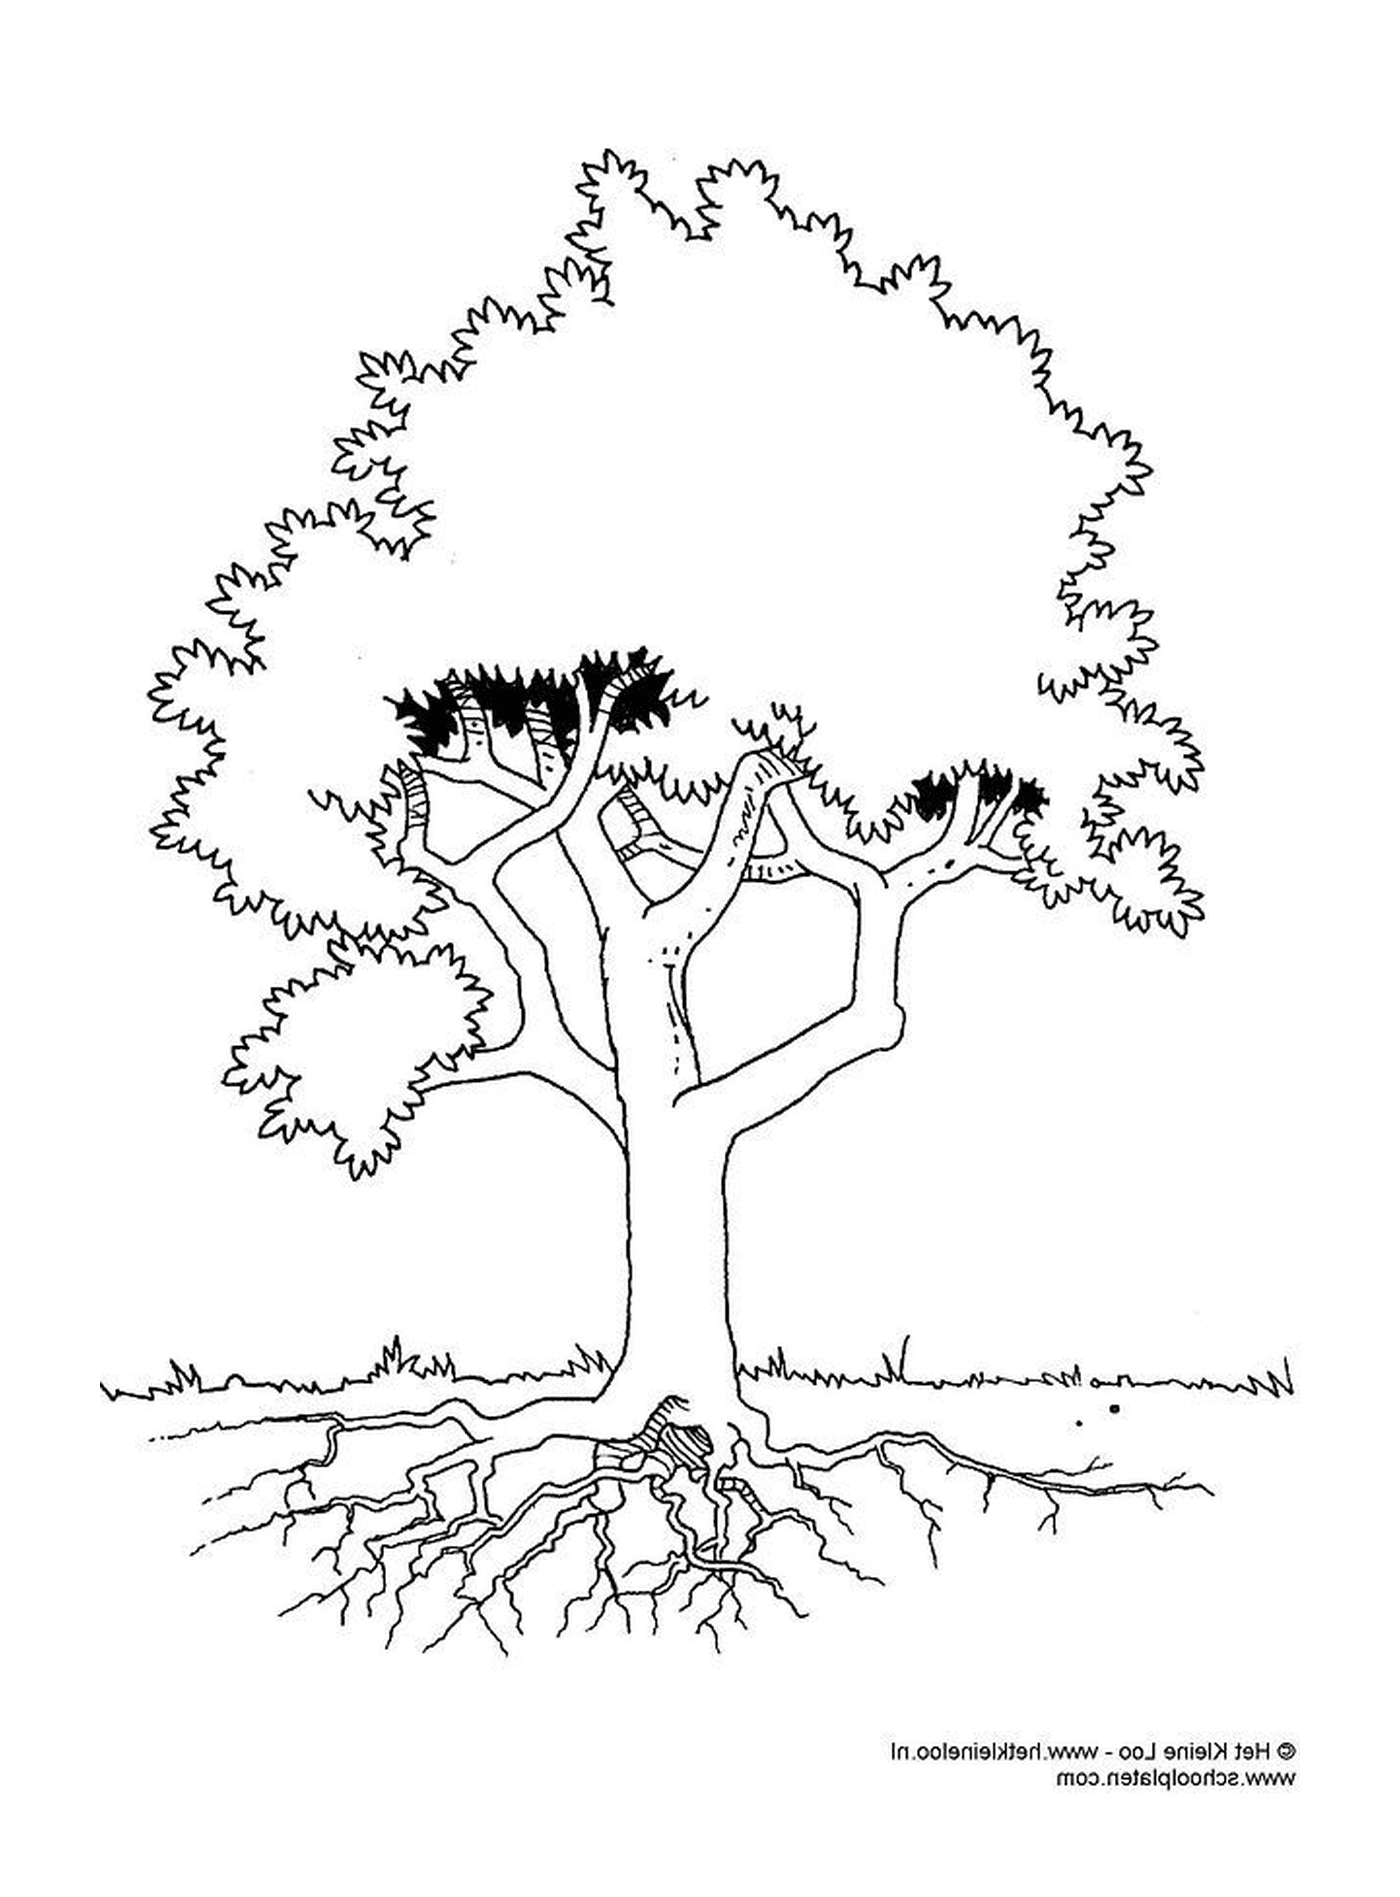  Un albero con le radici 